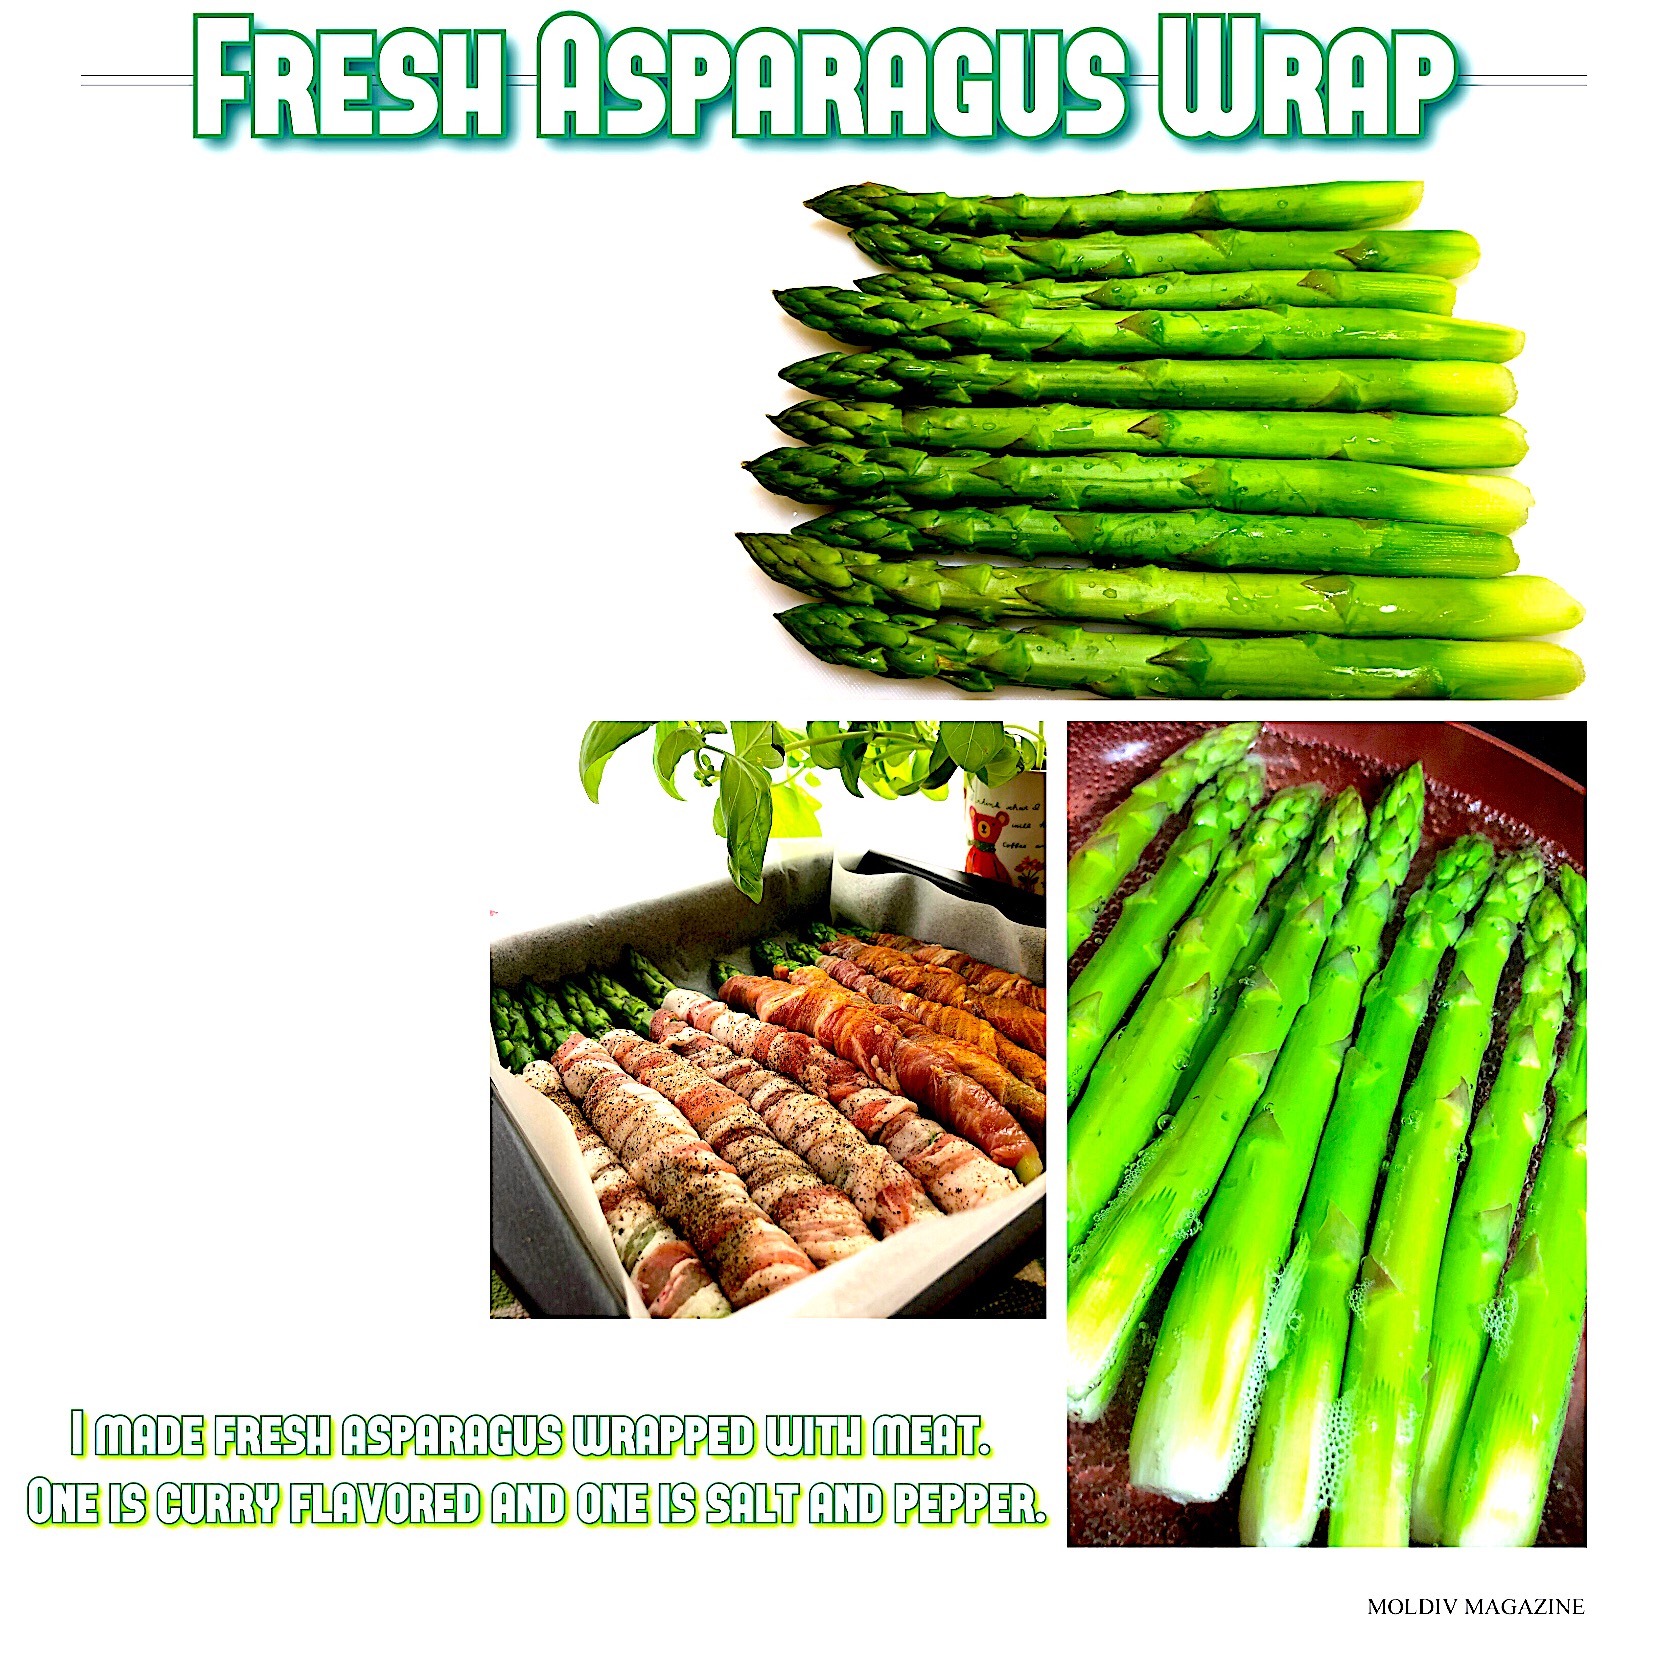 新鮮アスパラガスの肉巻き 塩胡椒とカレー味の2種類 I made fresh asparagus wrapped with meat. One is curry flavored and one is salt and pepper.